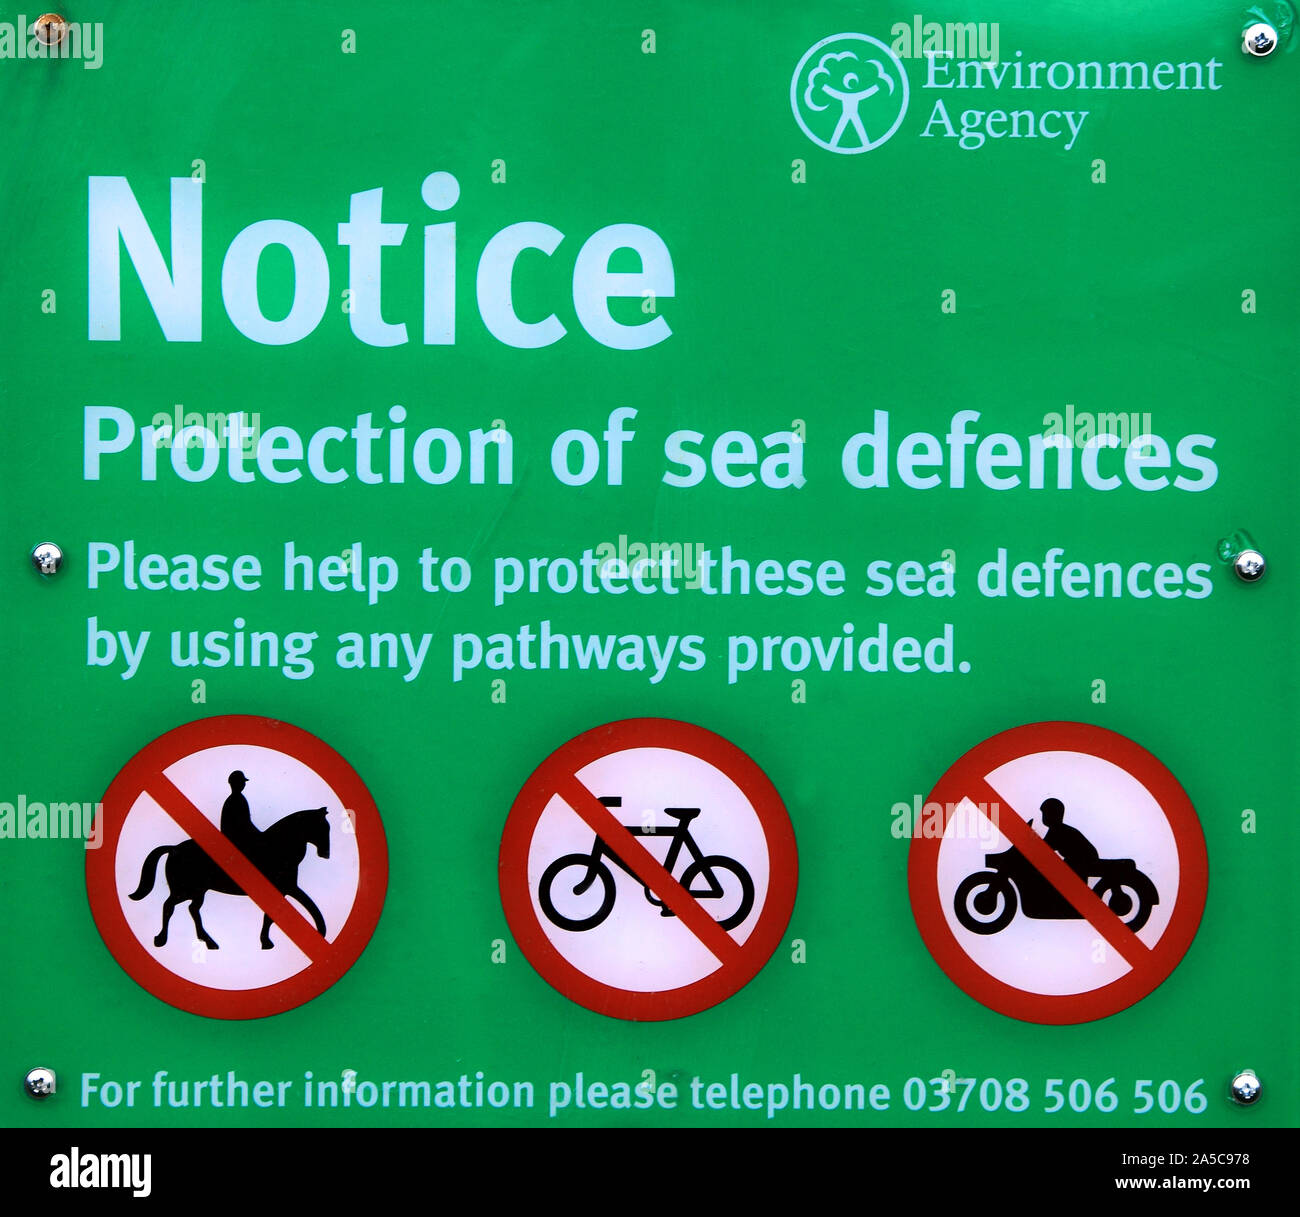 Agence de l'environnement, avis, avertissement, de défense de la mer, de la protection, signe, côte de la mer du Nord, Thornham, Norfolk, England, UK, côtières Banque D'Images